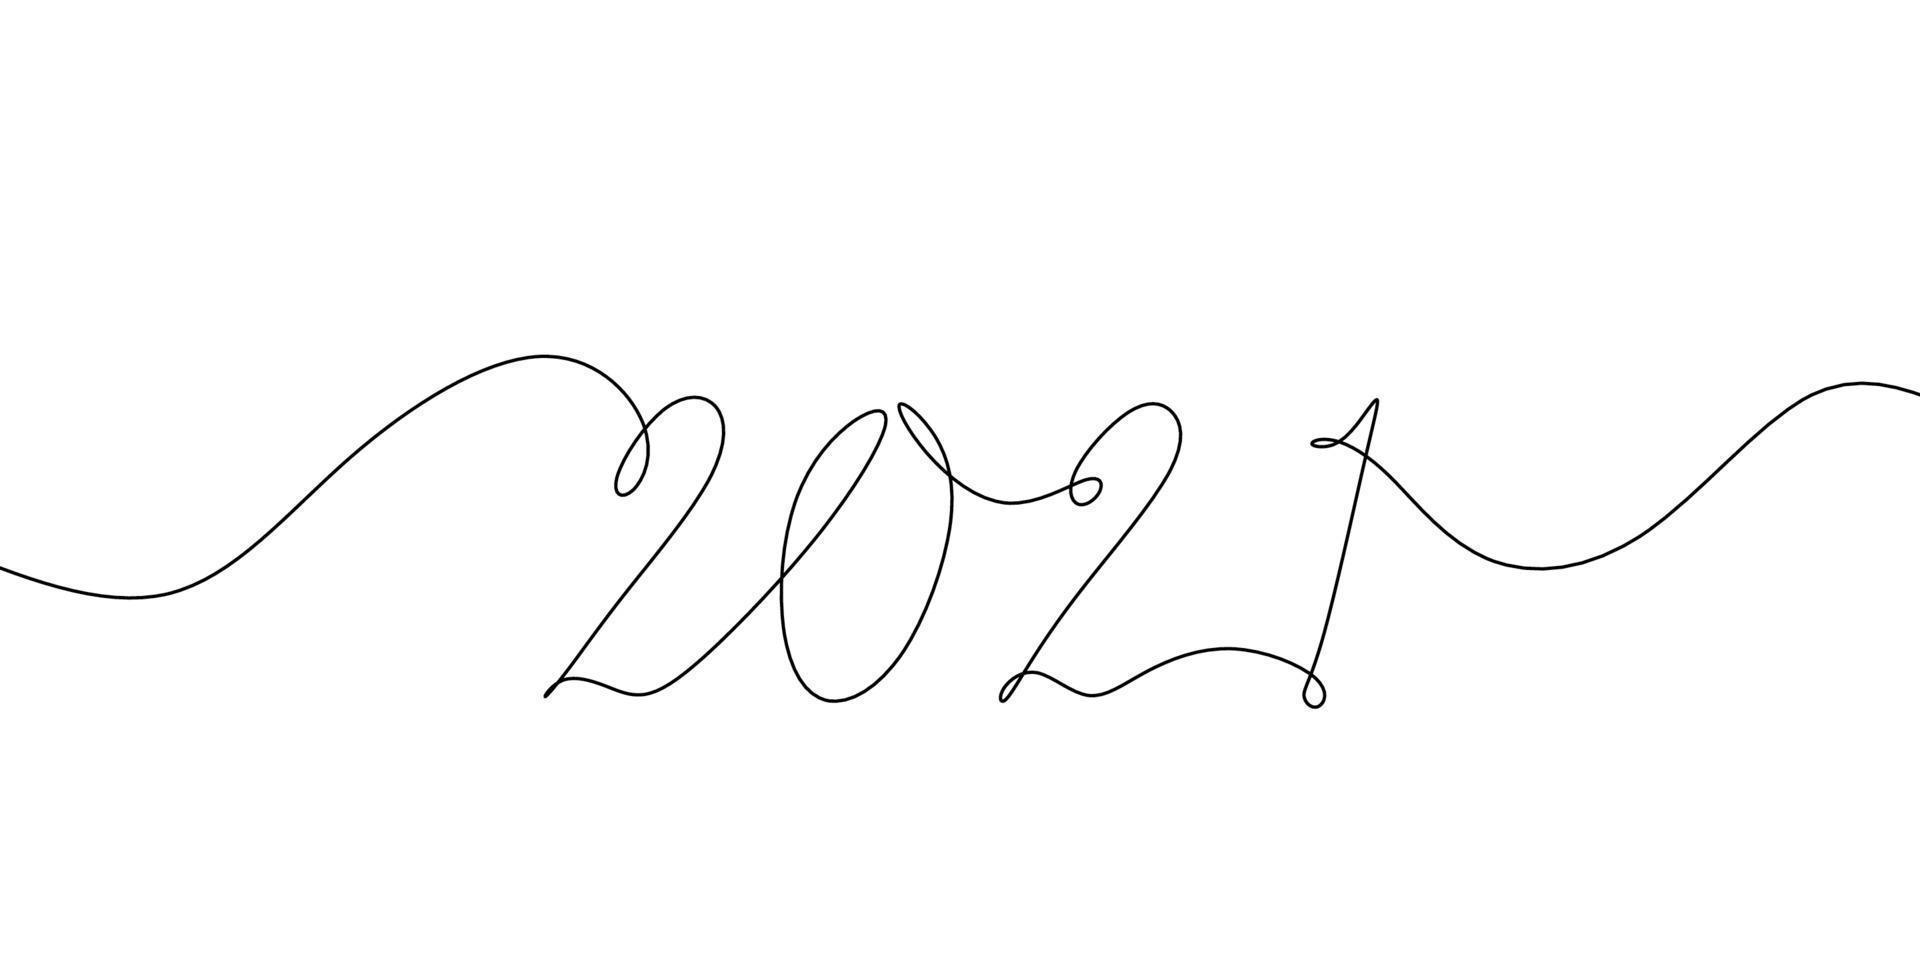 2021 felice anno nuovo disegno della firma del disegno a mano unico contorno continuo vettore